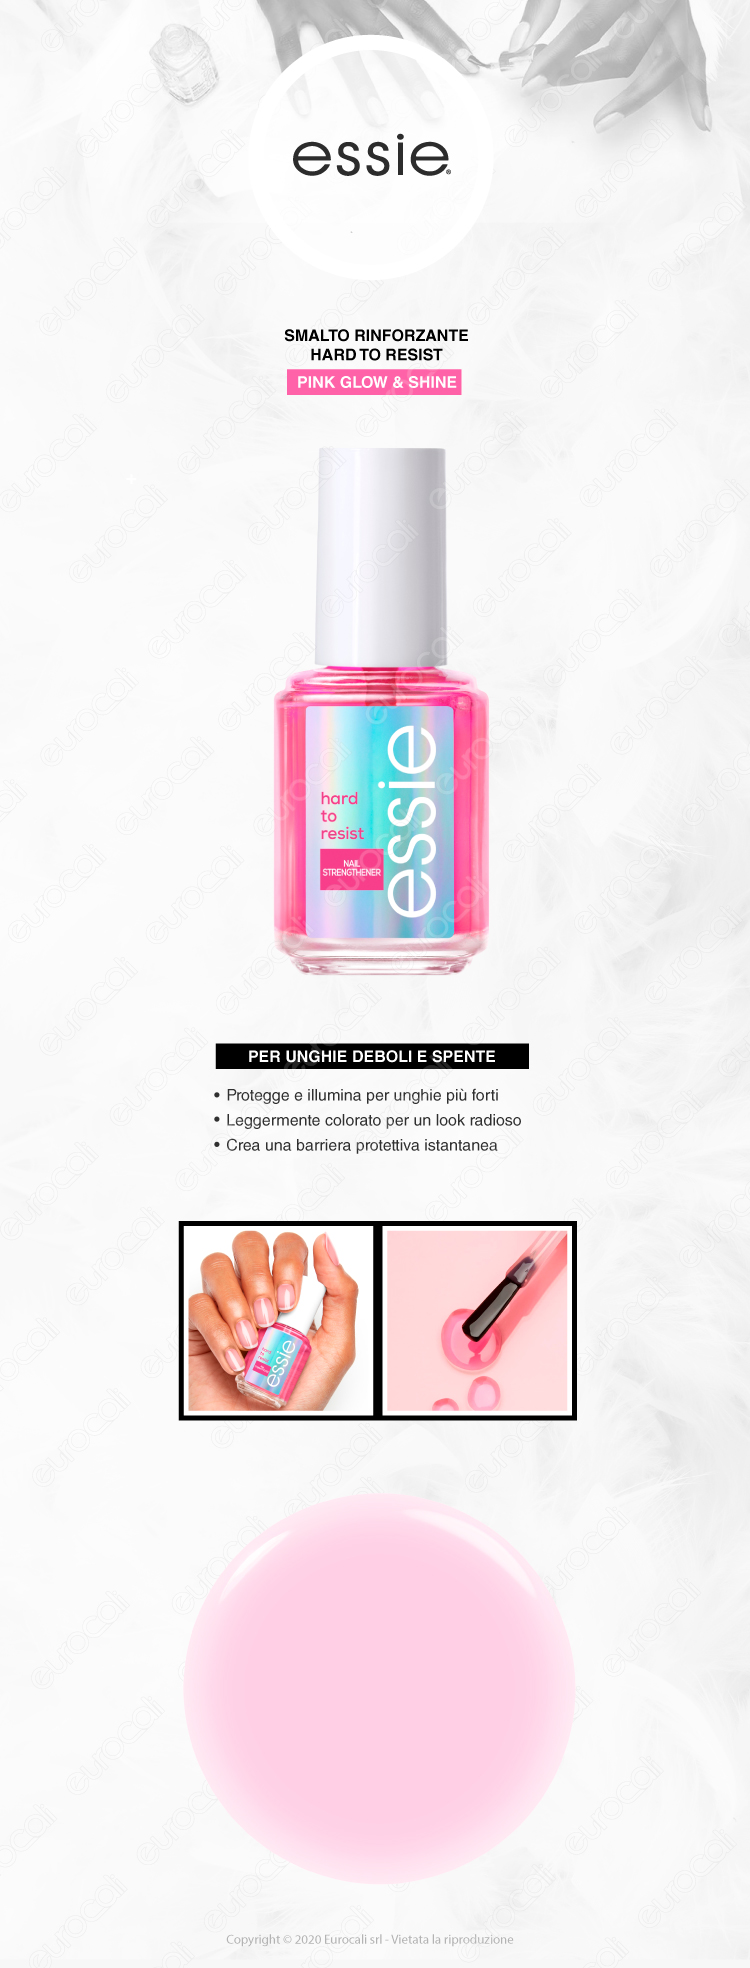 Essie Glow & Shine Pink smalto rinforzante per unghie deboli e spente